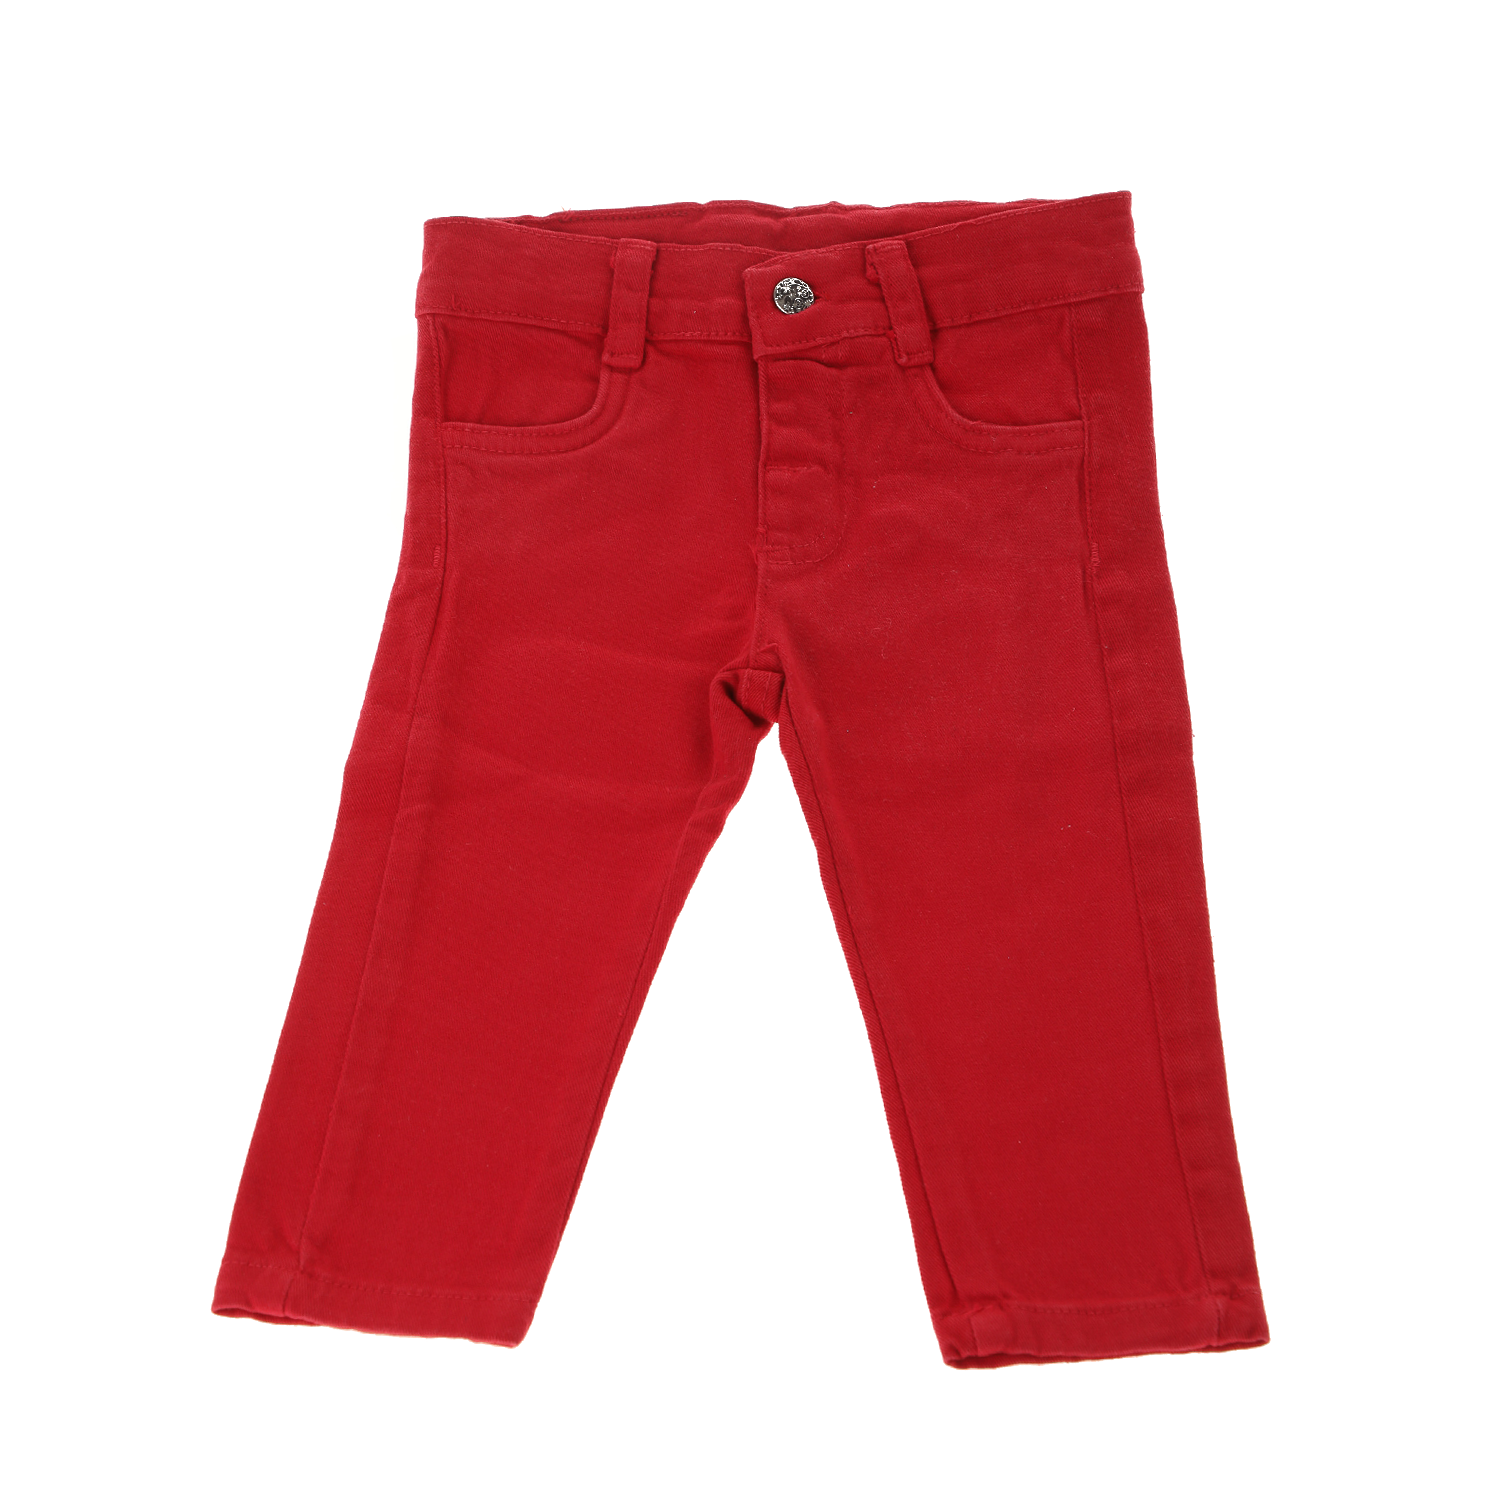 Παιδικά/Baby/Ρούχα/Παντελόνια SAM 0-13 - Βρεφικό παντελόνι SAM 0-13 κόκκινο